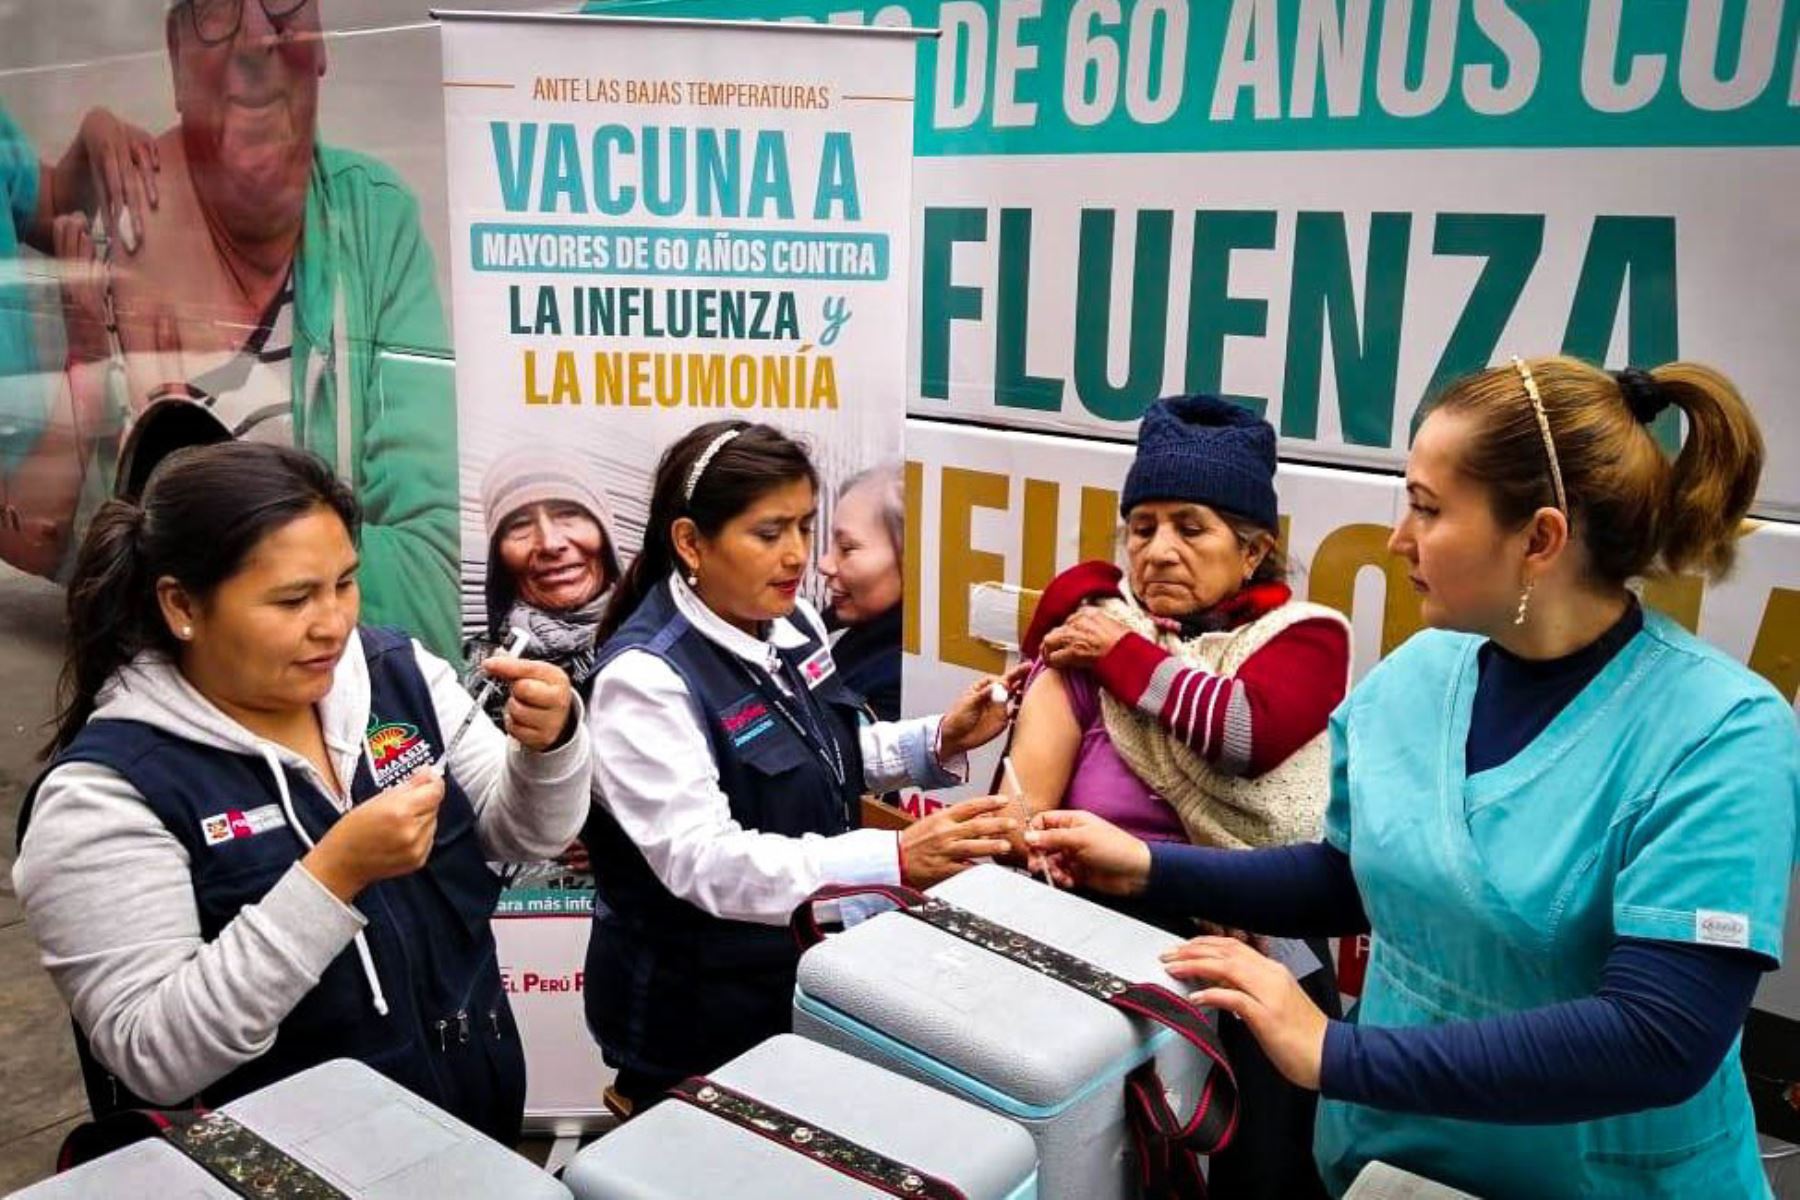 El Bus de la Vacunación llega hoy el sábado 24 de agosto al distrito de San Vicente, provincia de Cañete, para inmunizar a la población en riesgo contra la influenza y la neumonía.